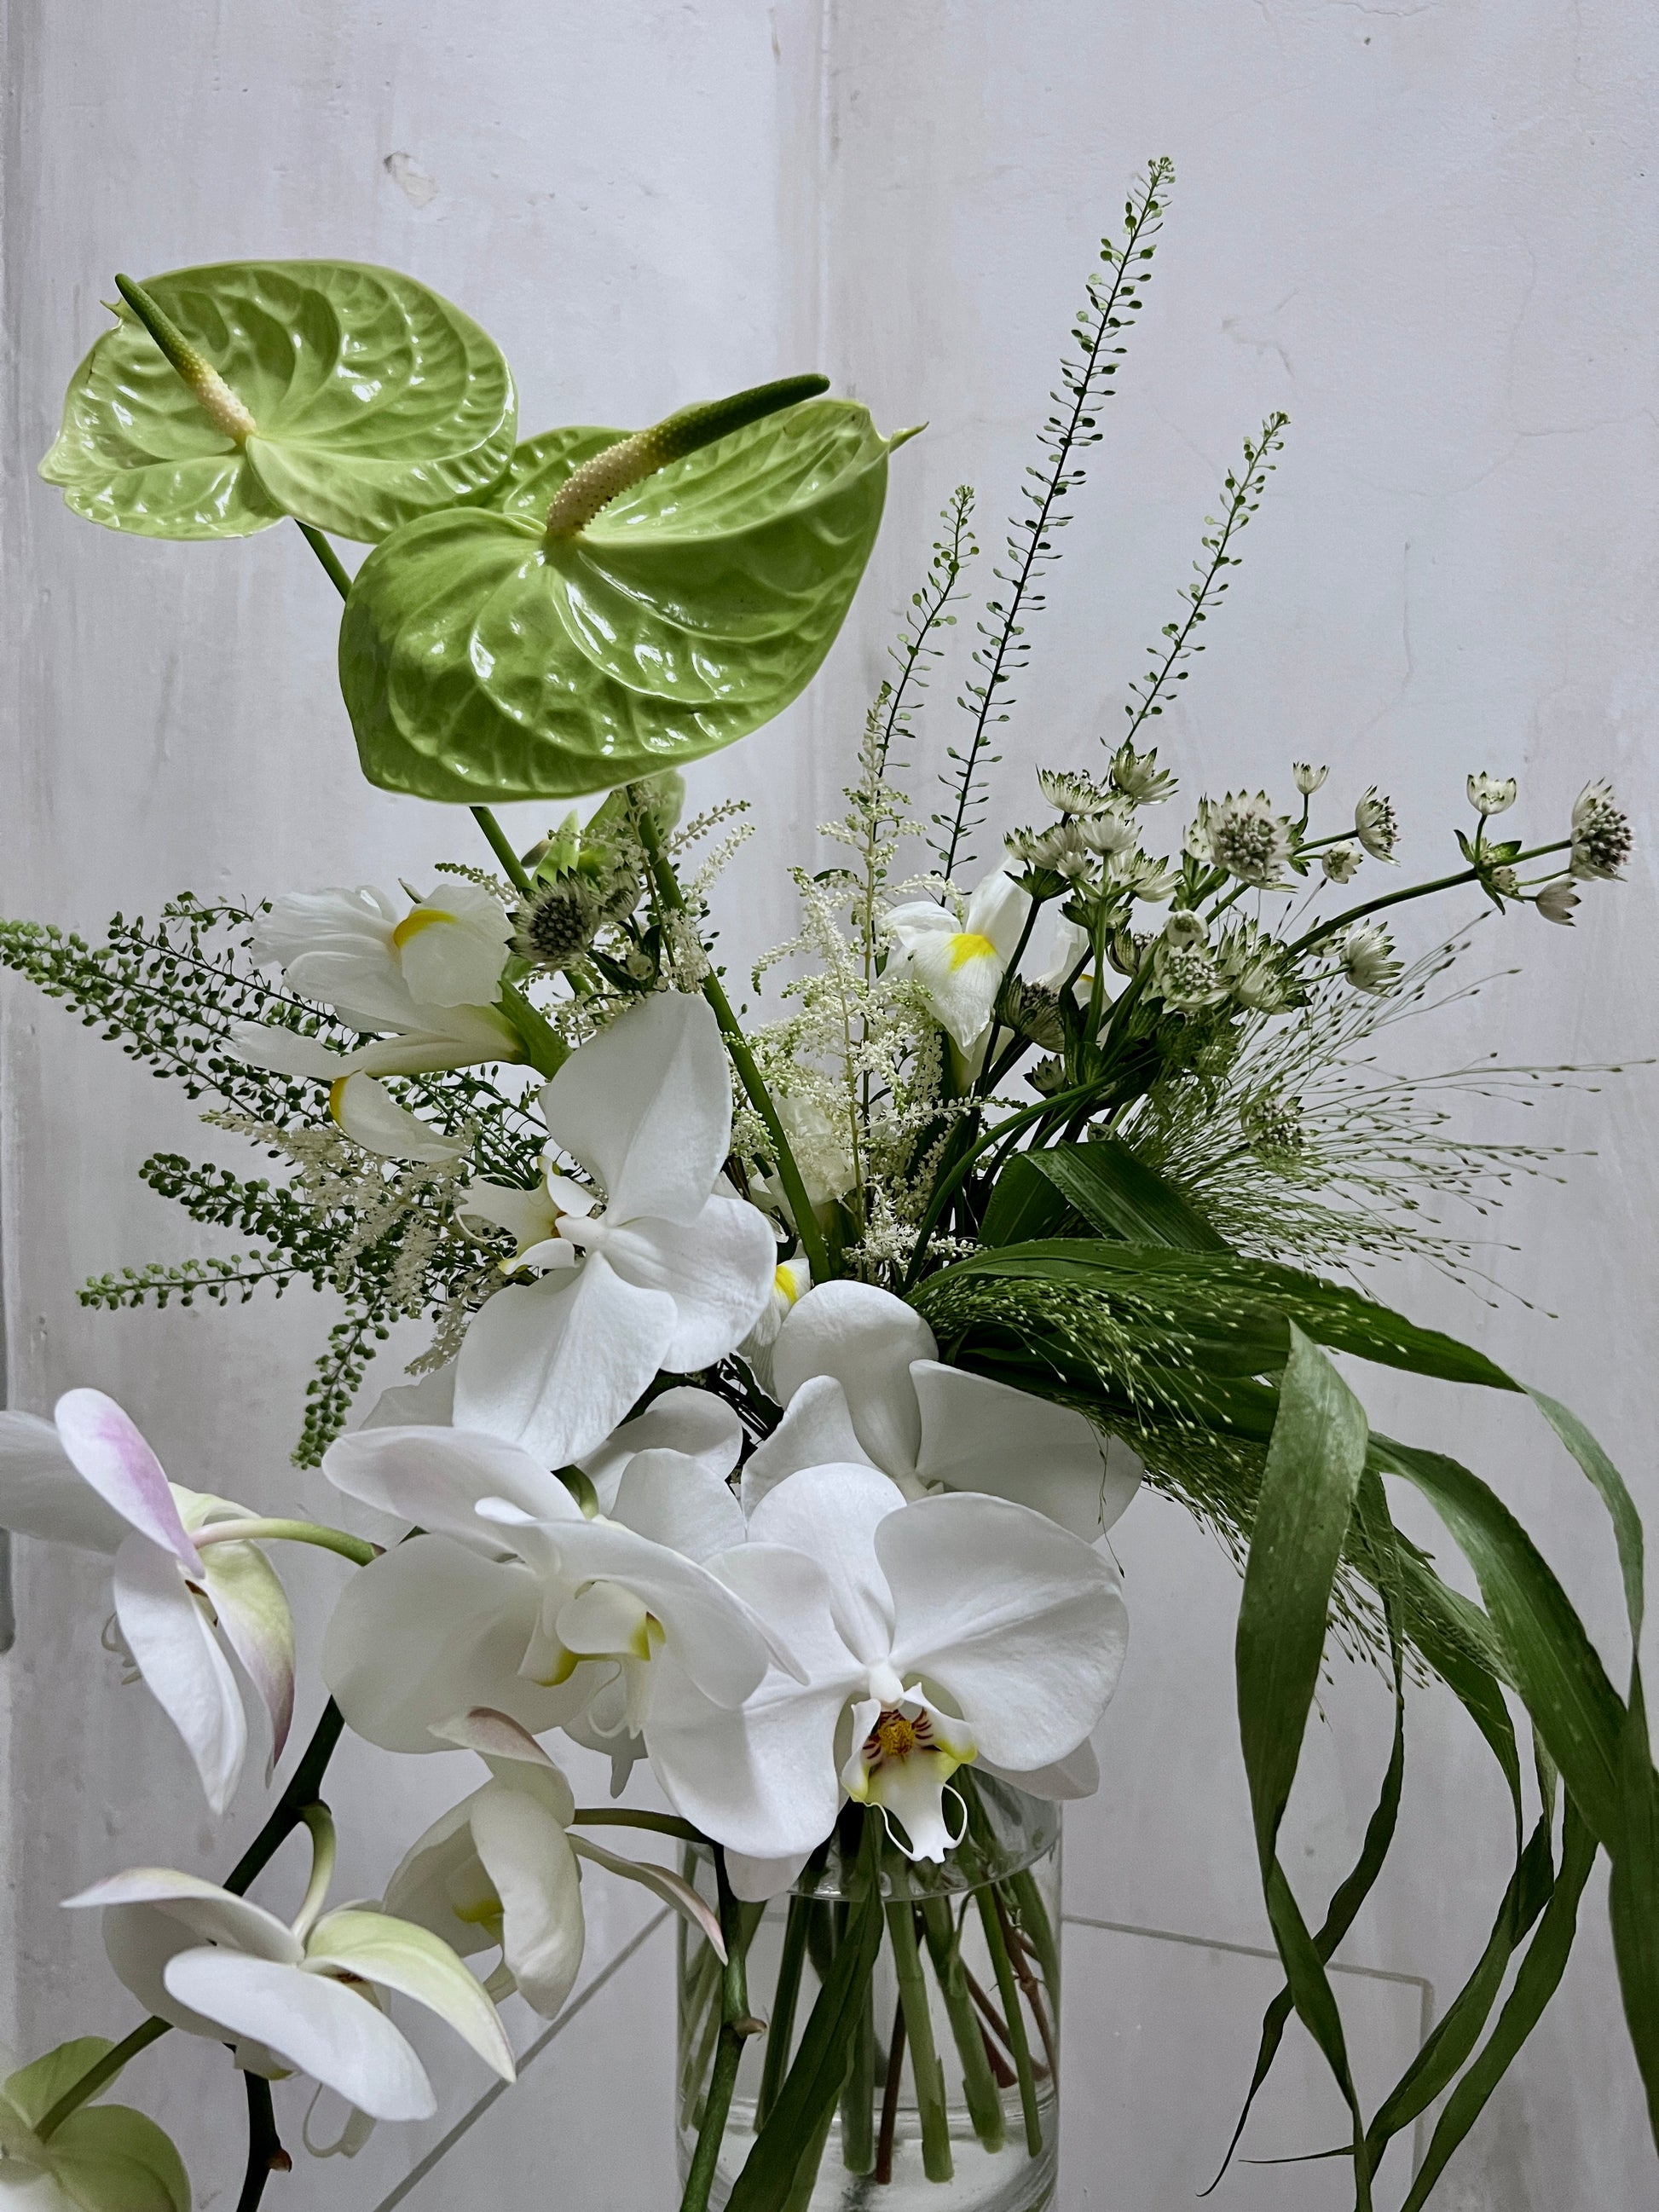 Orchid Flower Arrangements | Orchid Flower Bouquet | amytfleur